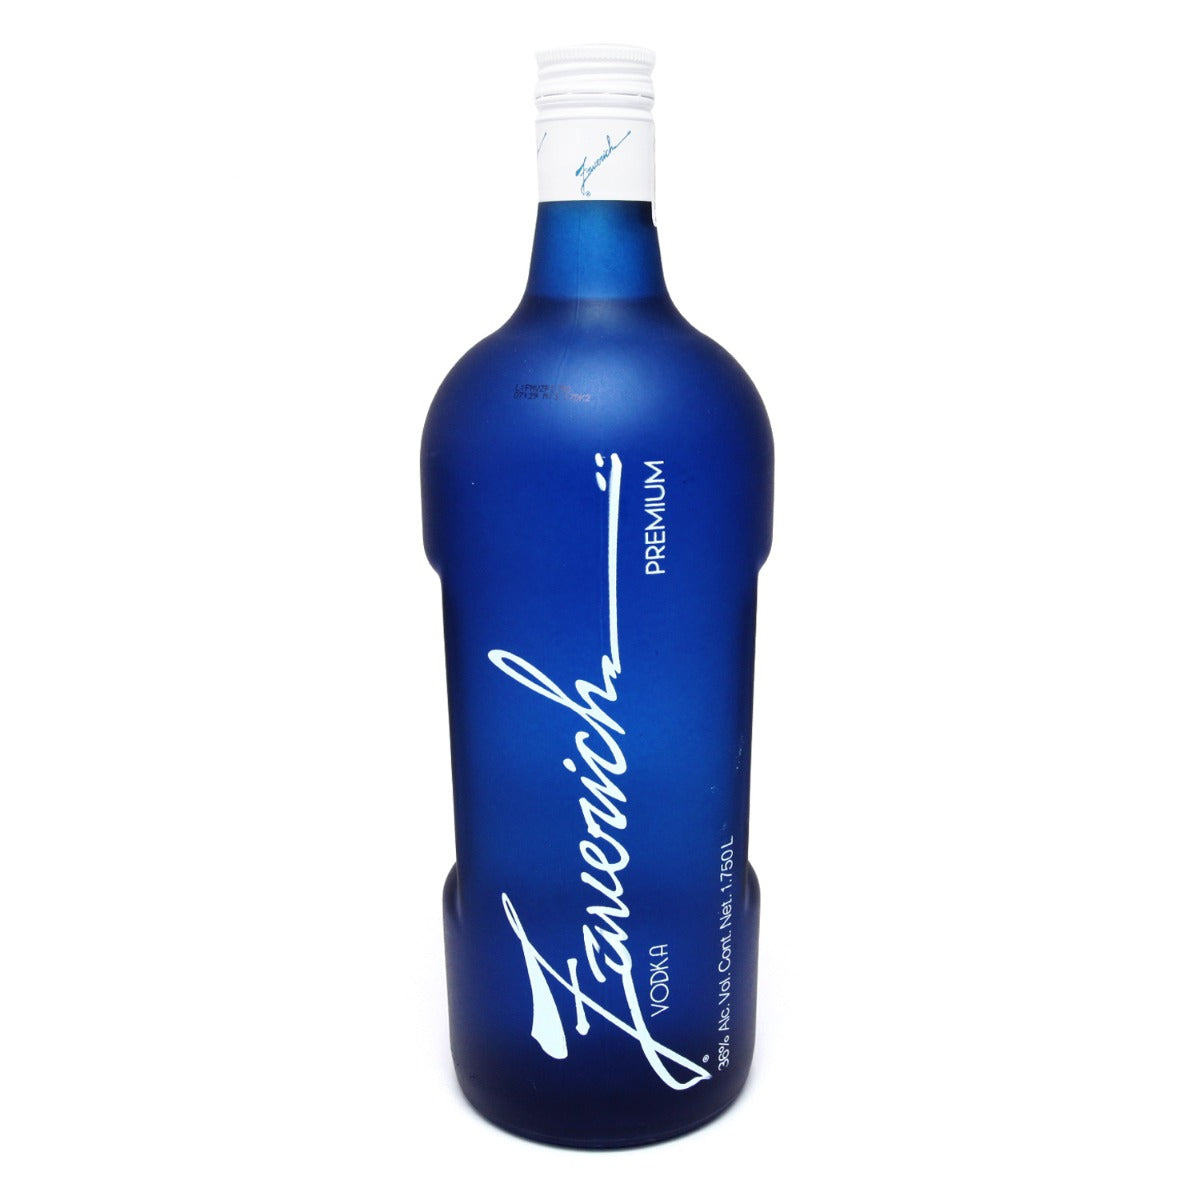 Vodka Zavirech Premium 1.750 mililitros